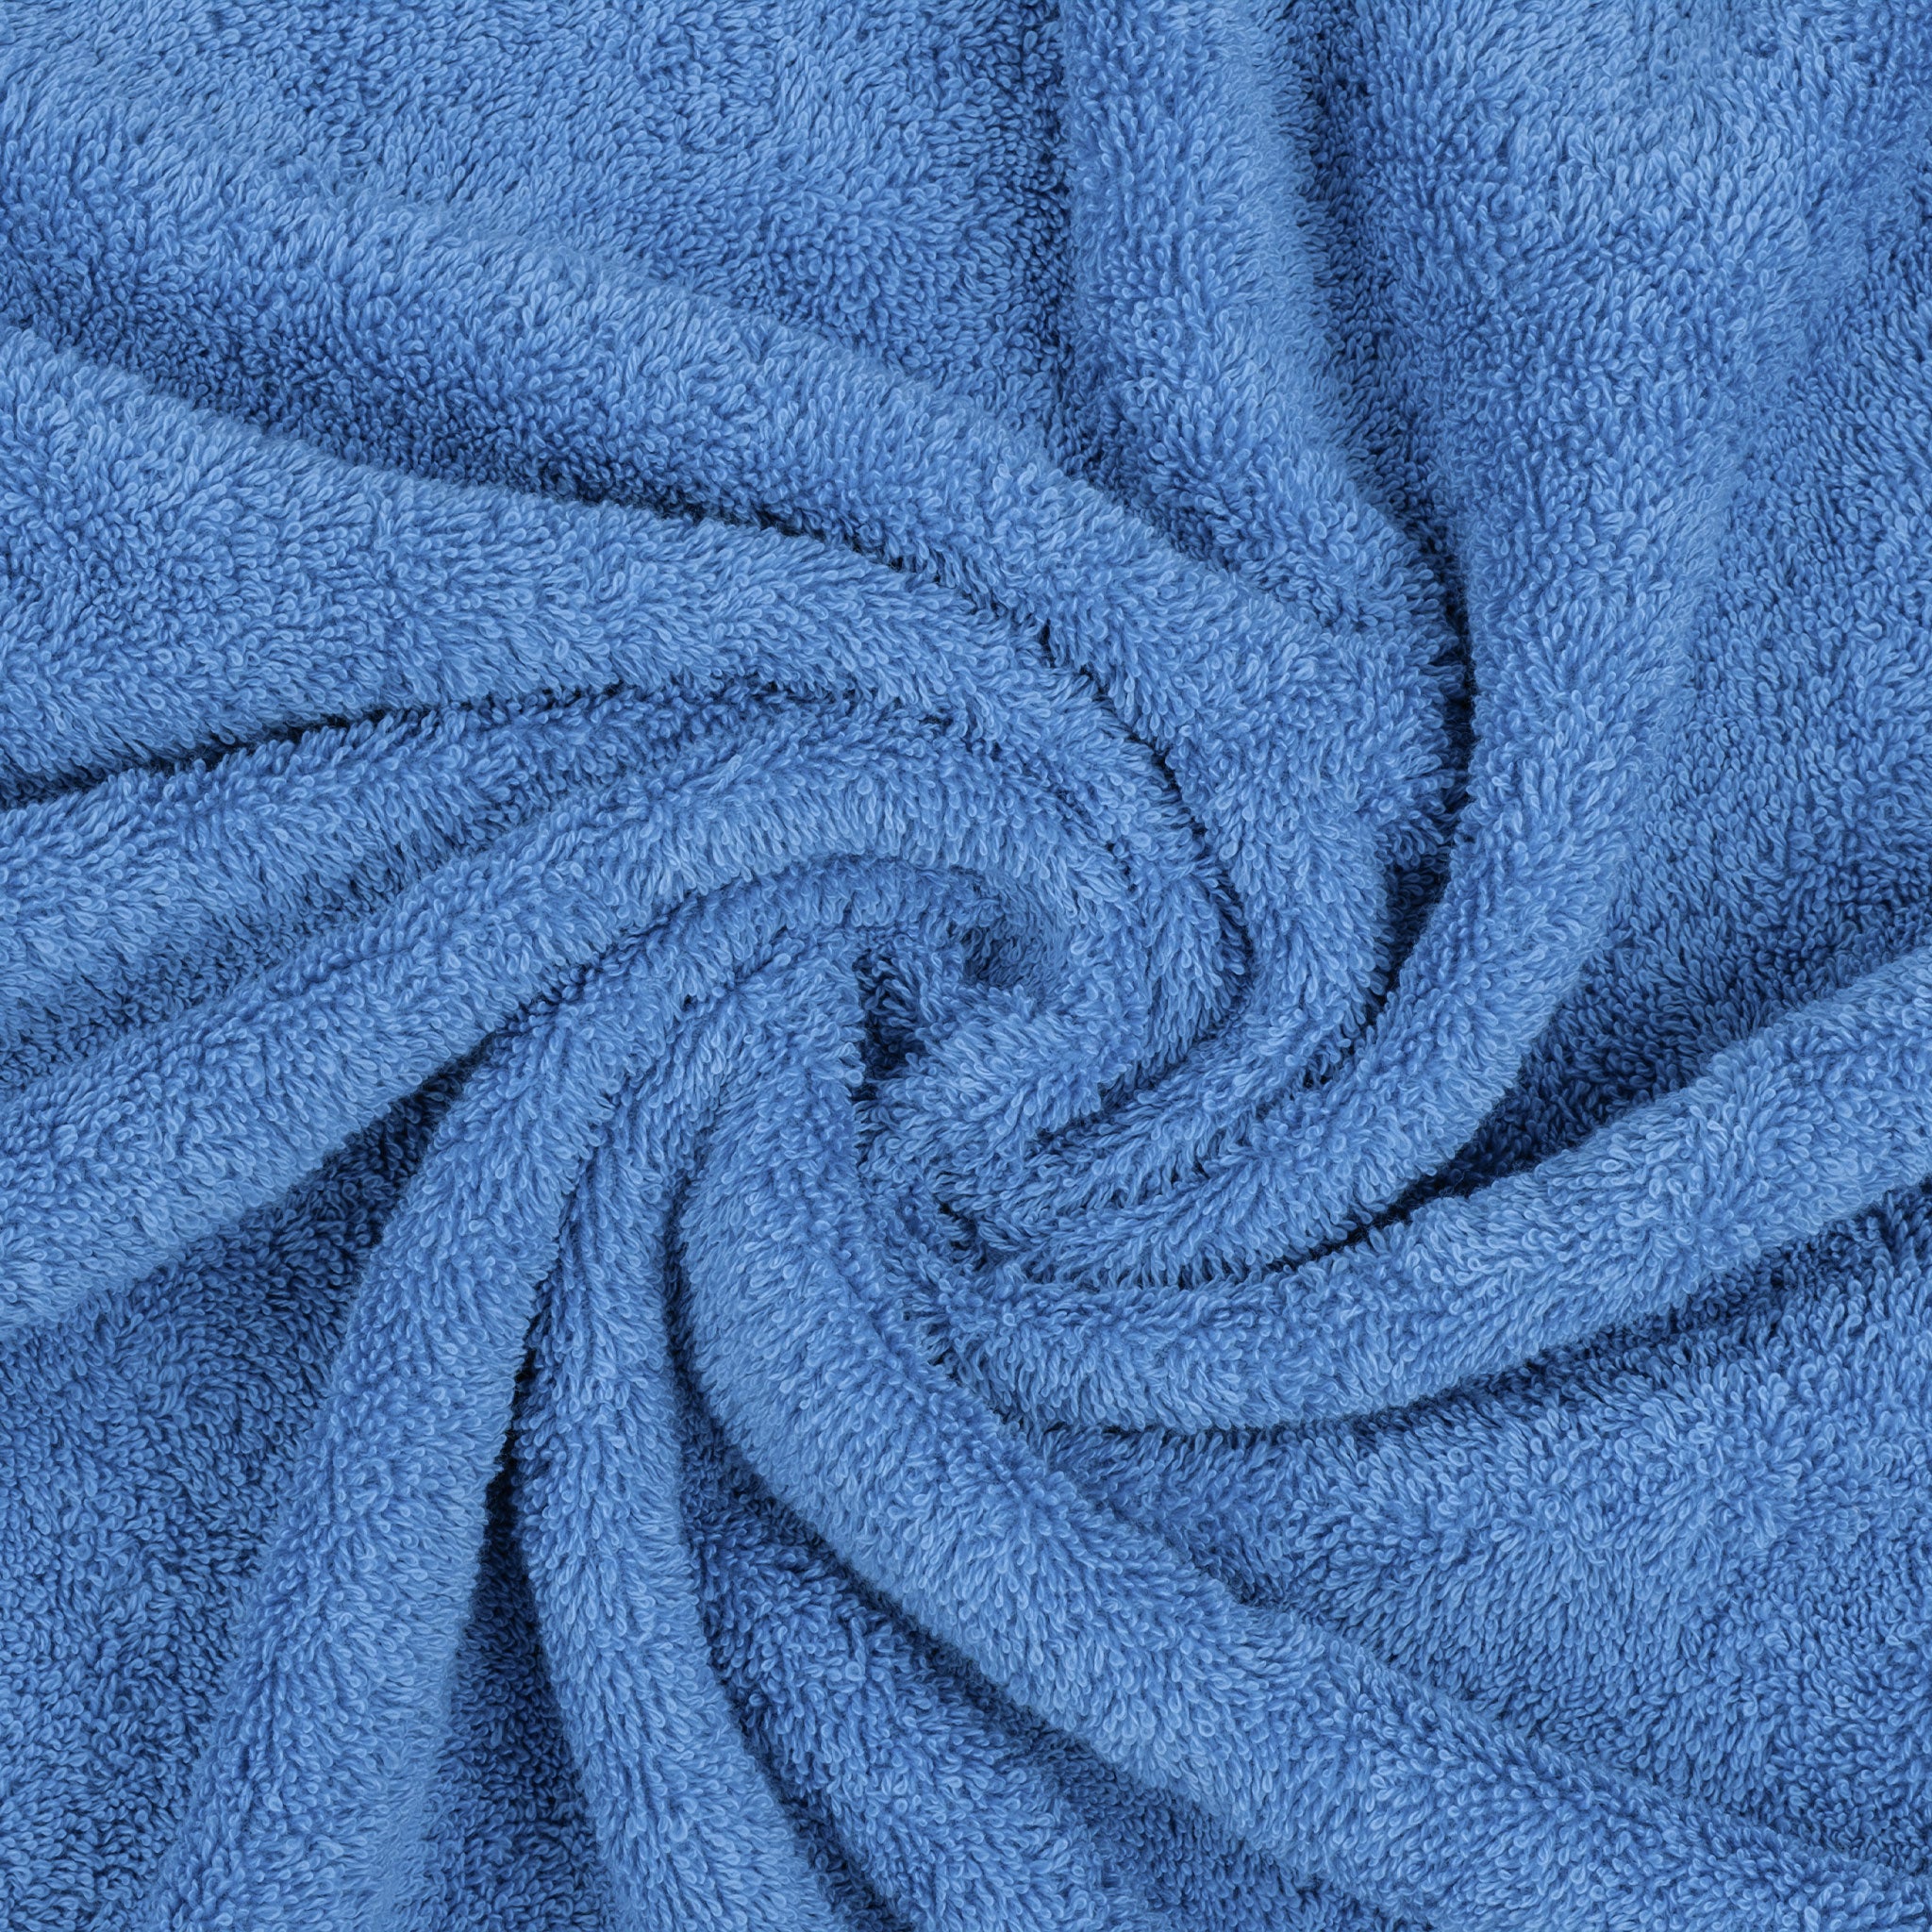 American Soft Linen - 6 Piece Turkish Cotton Bath Towel Set - Electric-Blue - 7